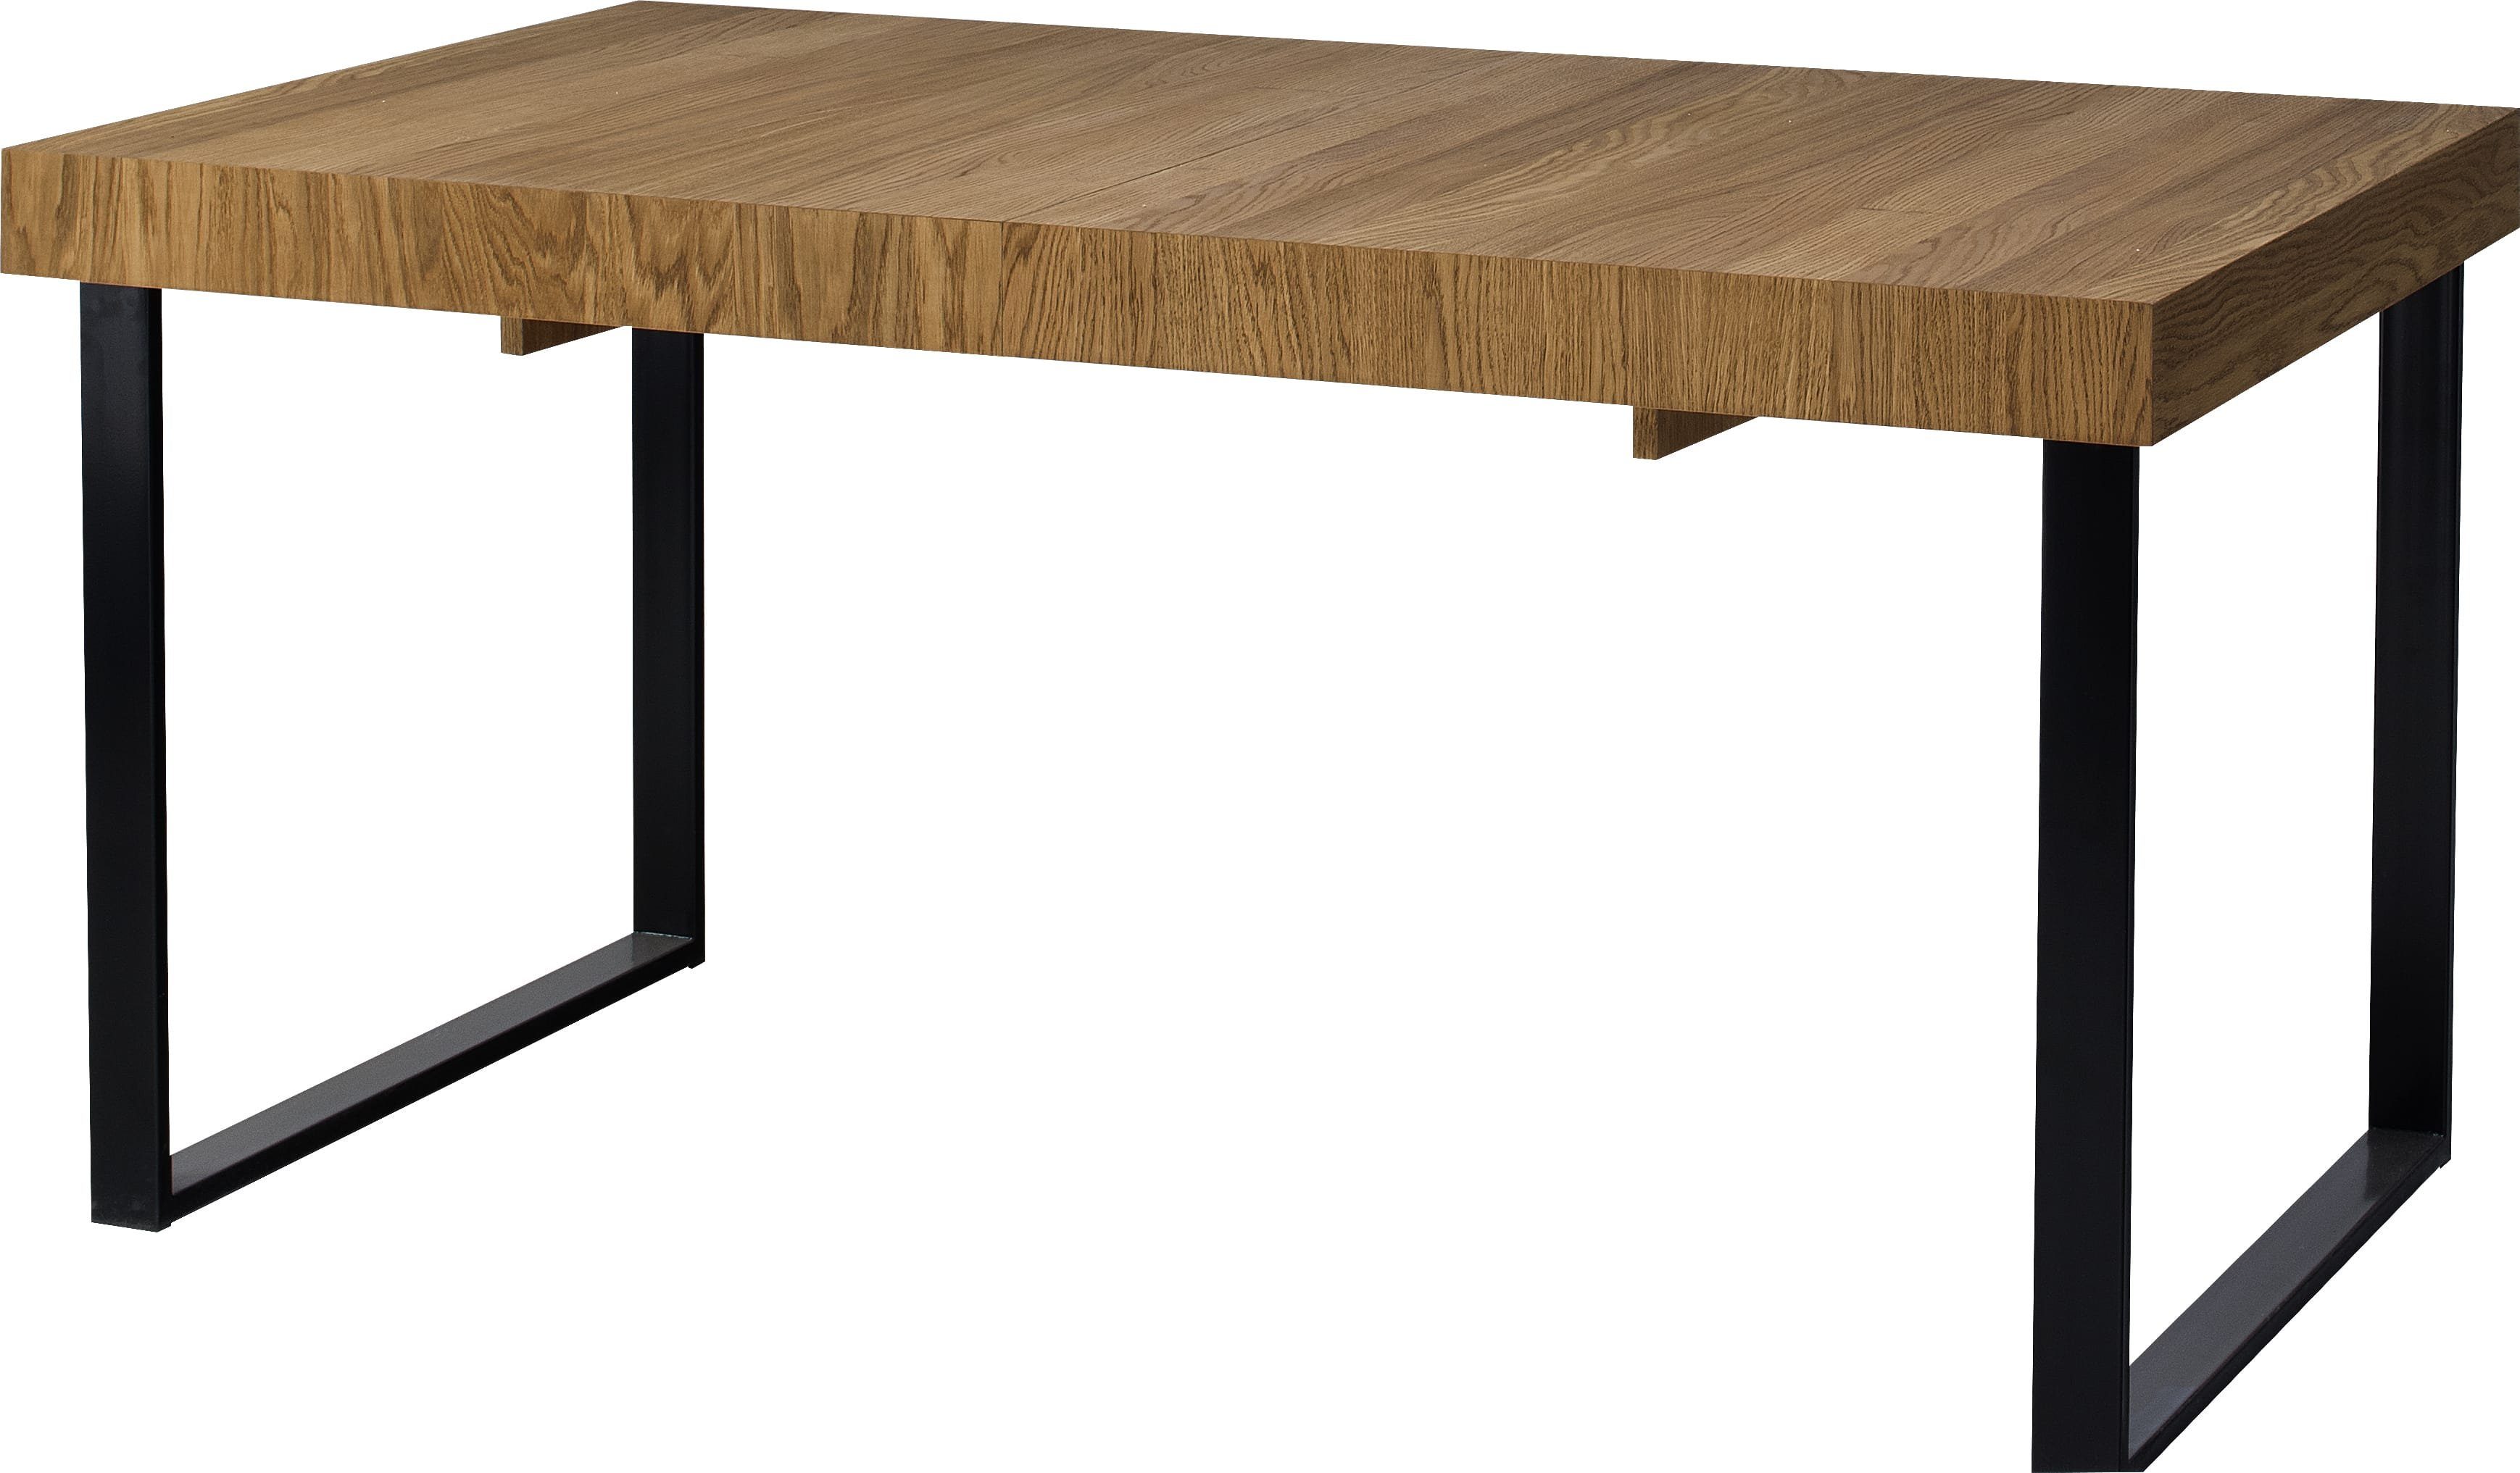 Marakesh Esstisch Metall ausziehbar, Massivholz Massivholz, Design, Matt Schwarz Honig Tisch), Skandinavisch Eiche (Esstisch, Stylefy rechteckig, aus